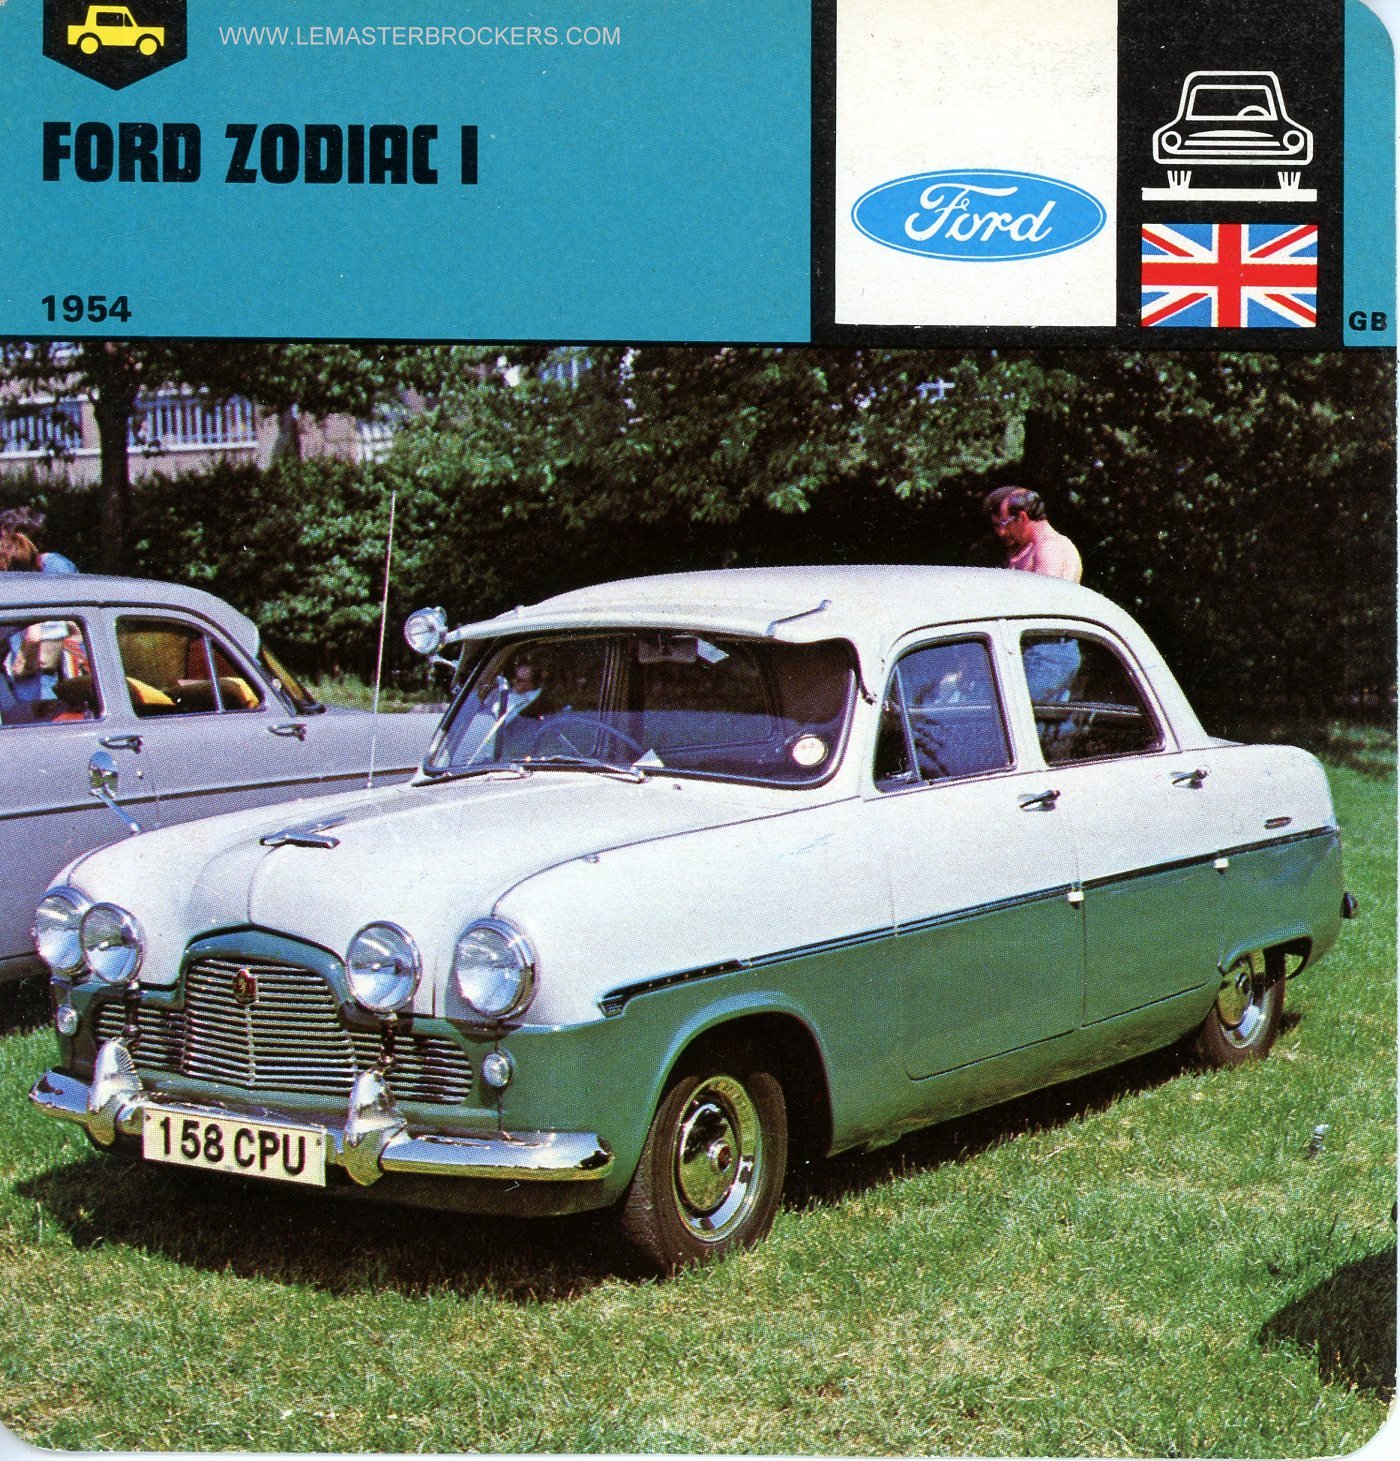 FORD ZODIAC I 1954 - FICHE AUTO